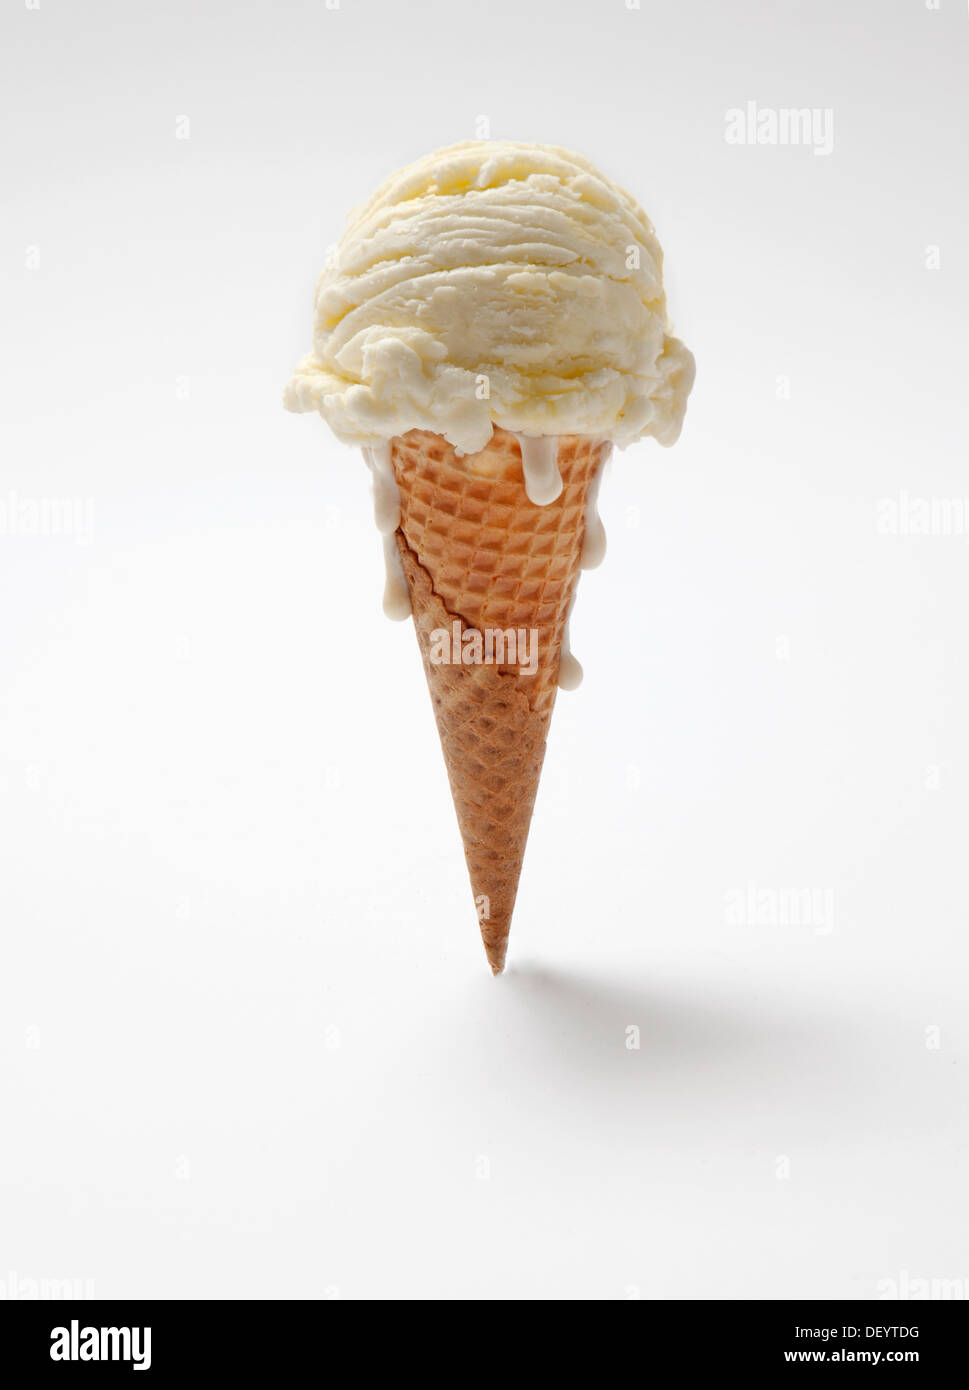 cornet de crème glacée Banque D'Images